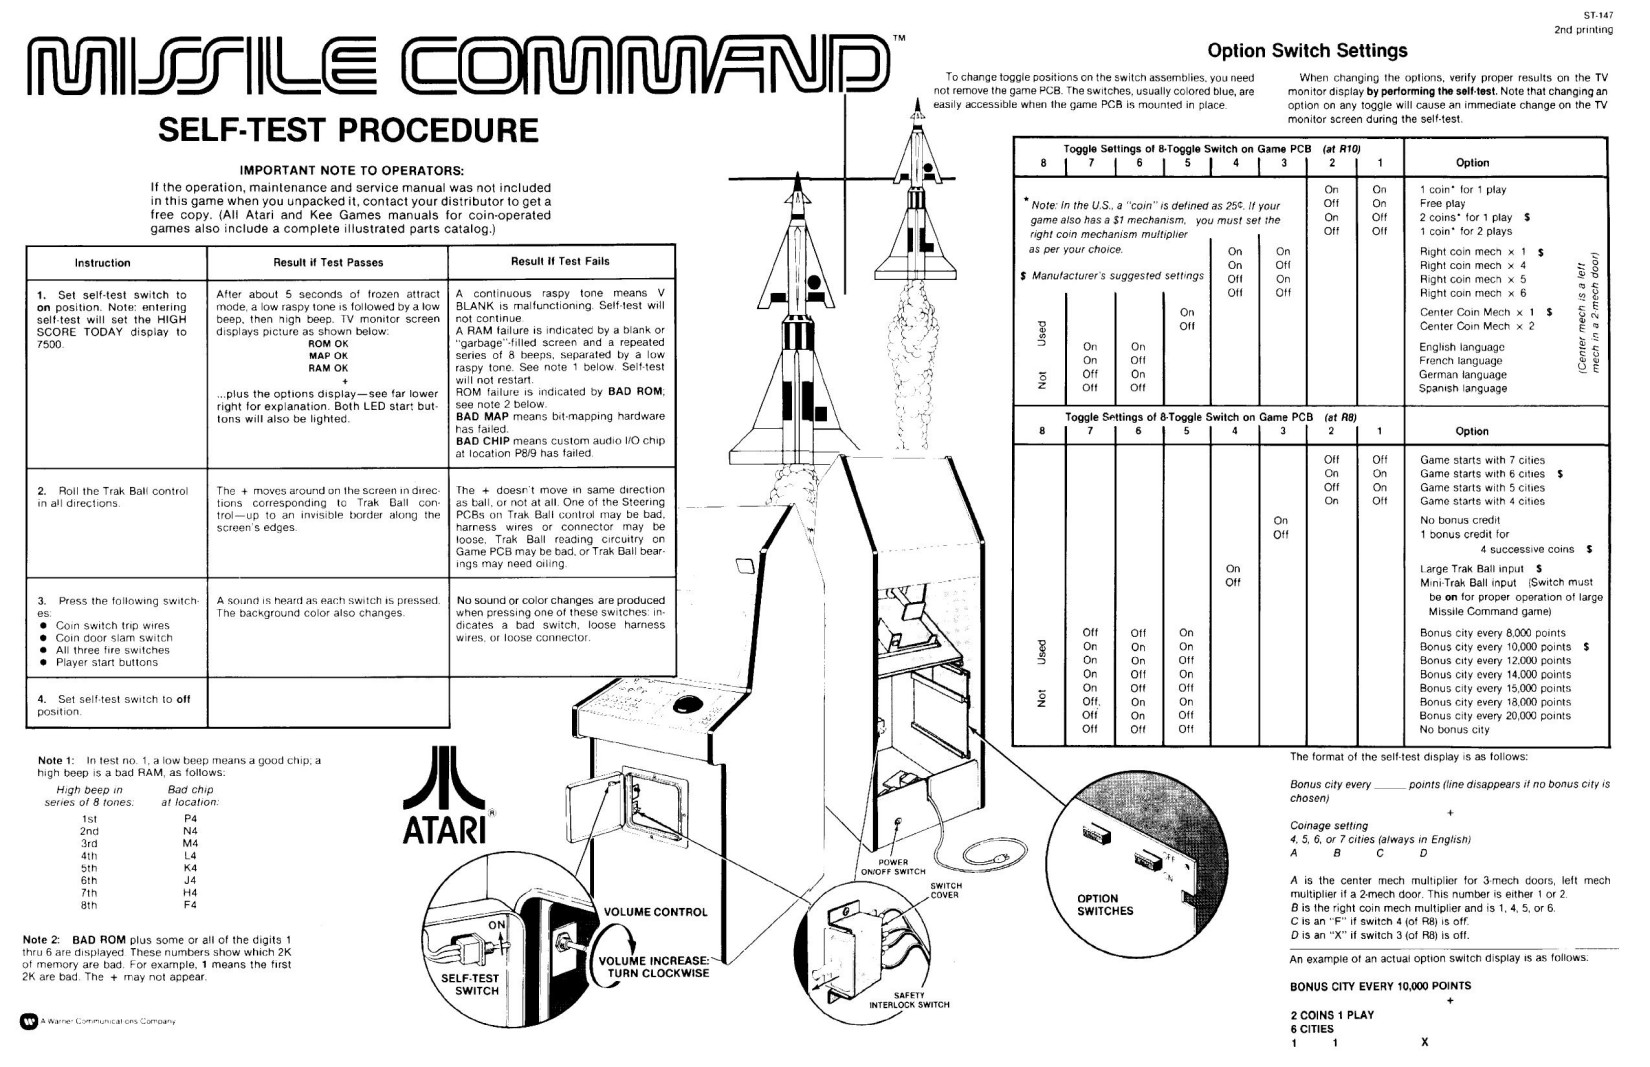 Missile Command (Backdoor Sheet) (U)